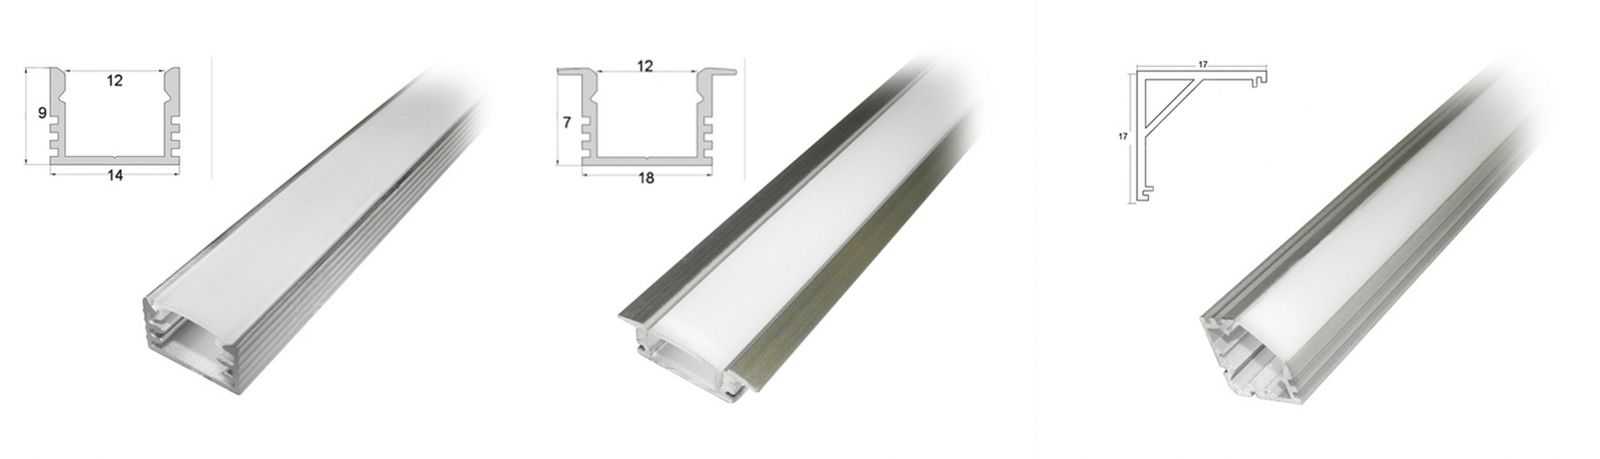 Алюминиевый светодиодный профиль для светодиодной ленты: зачем нужен, какие есть виды